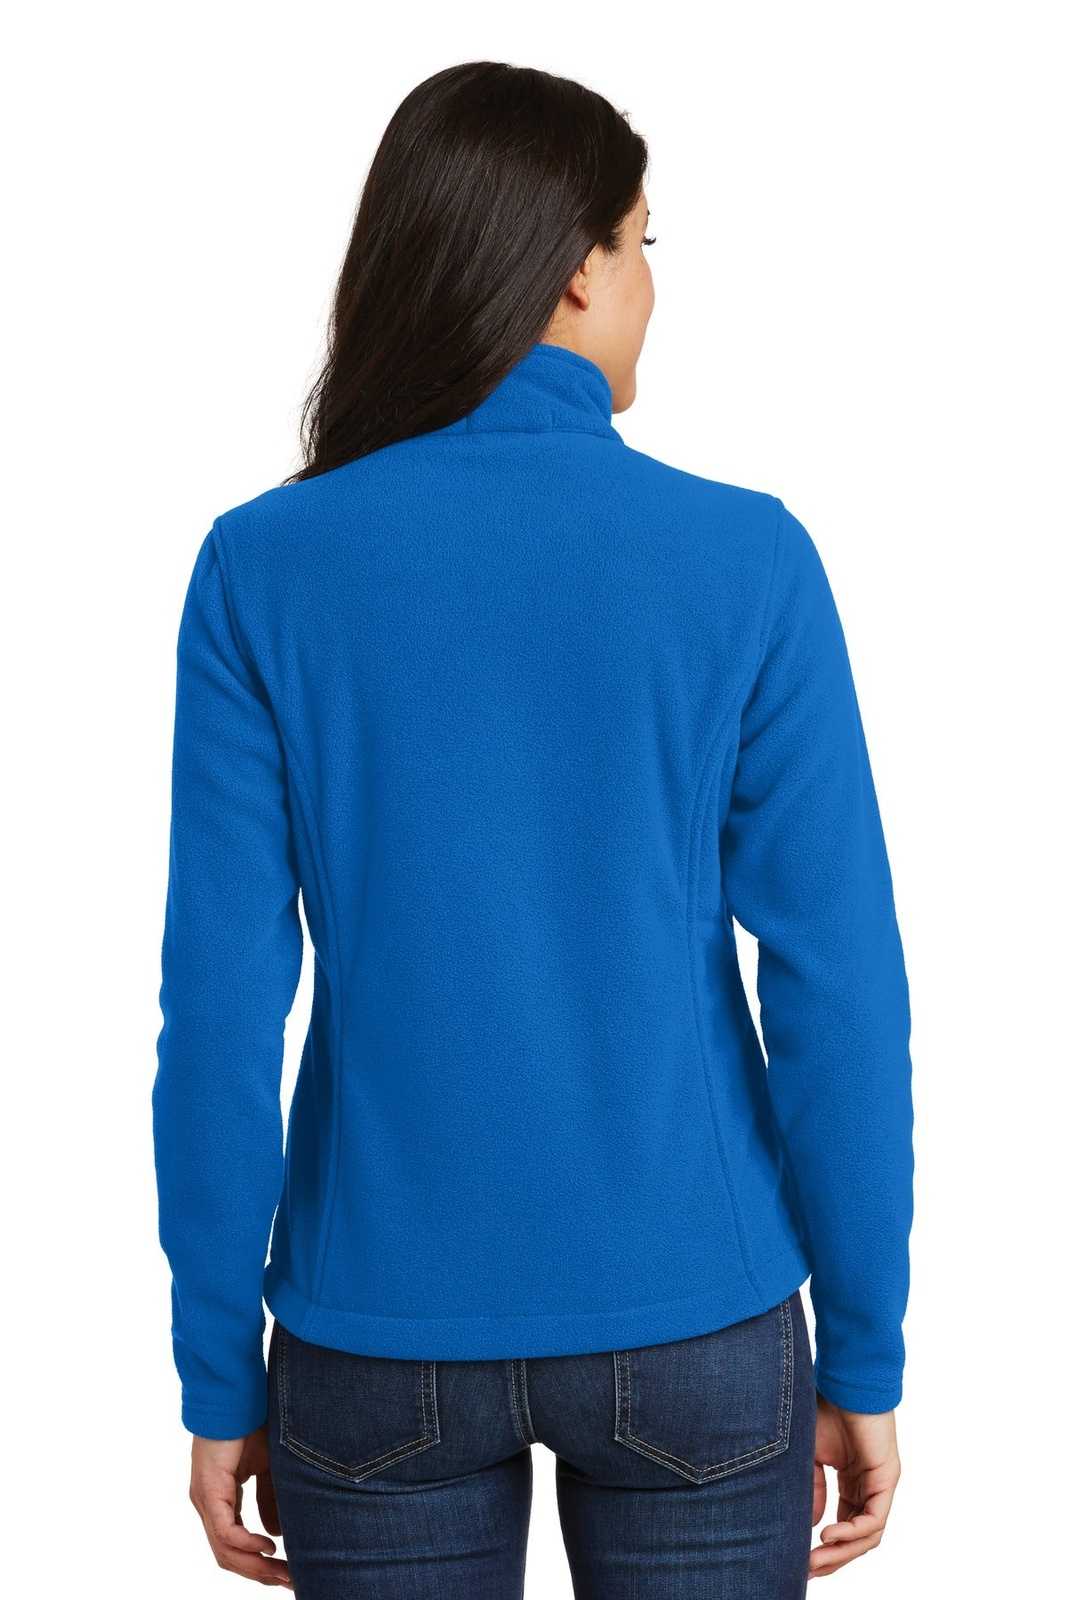 Port Authority L217 Ladies Value Fleece Jacket - Skydiver Blue - HIT a Double - 1